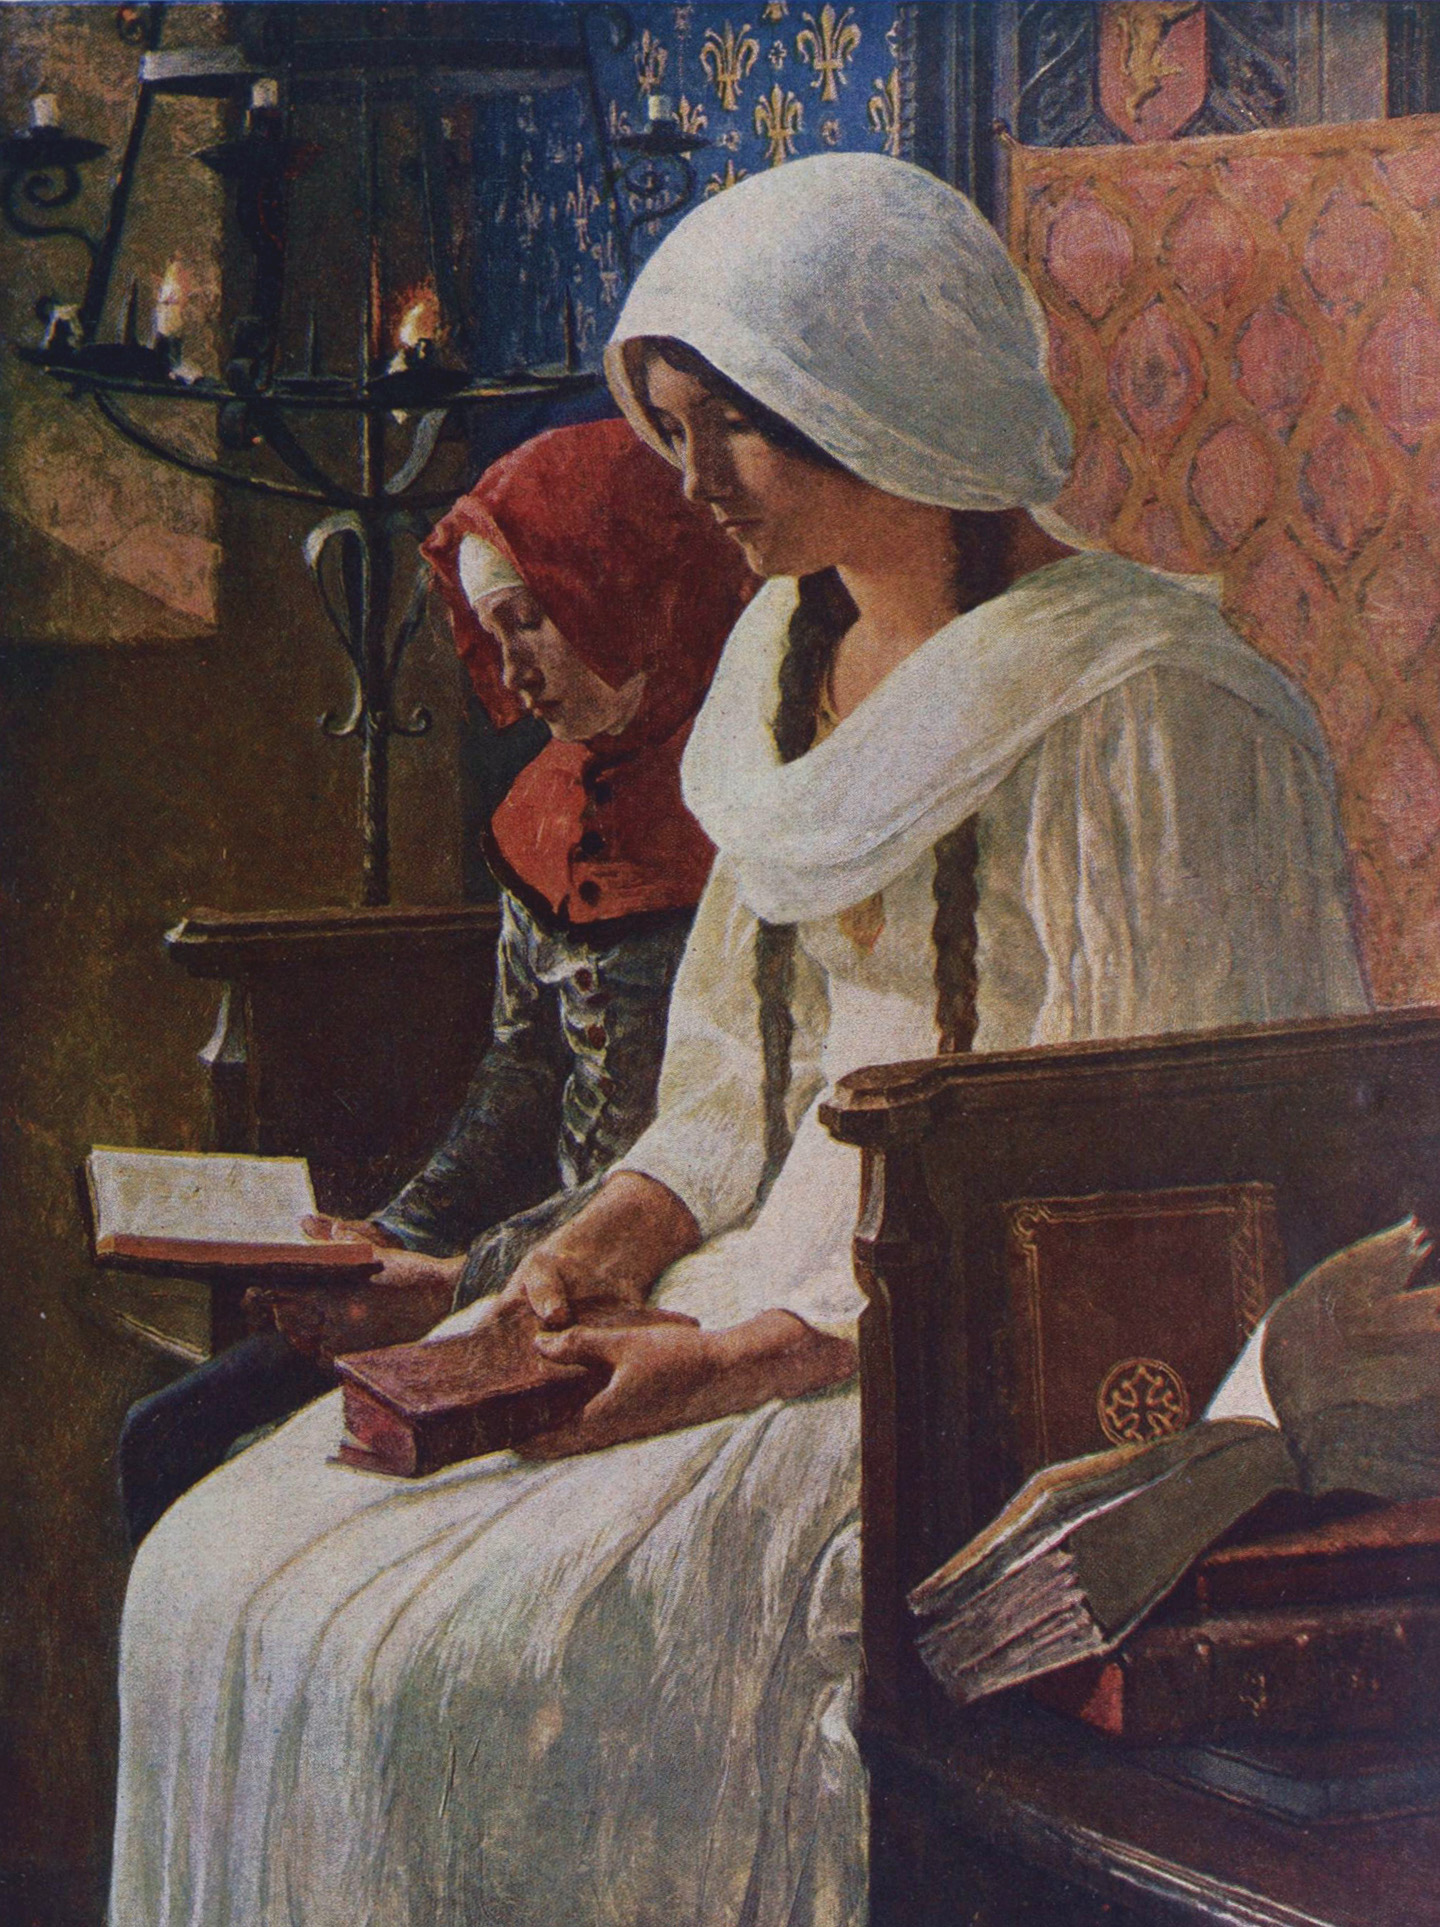 Tác phẩm “Chiêm niệm” của họa sĩ Jean-Paul Laurens, năm 1911. (Ảnh: Tư liệu công cộng)